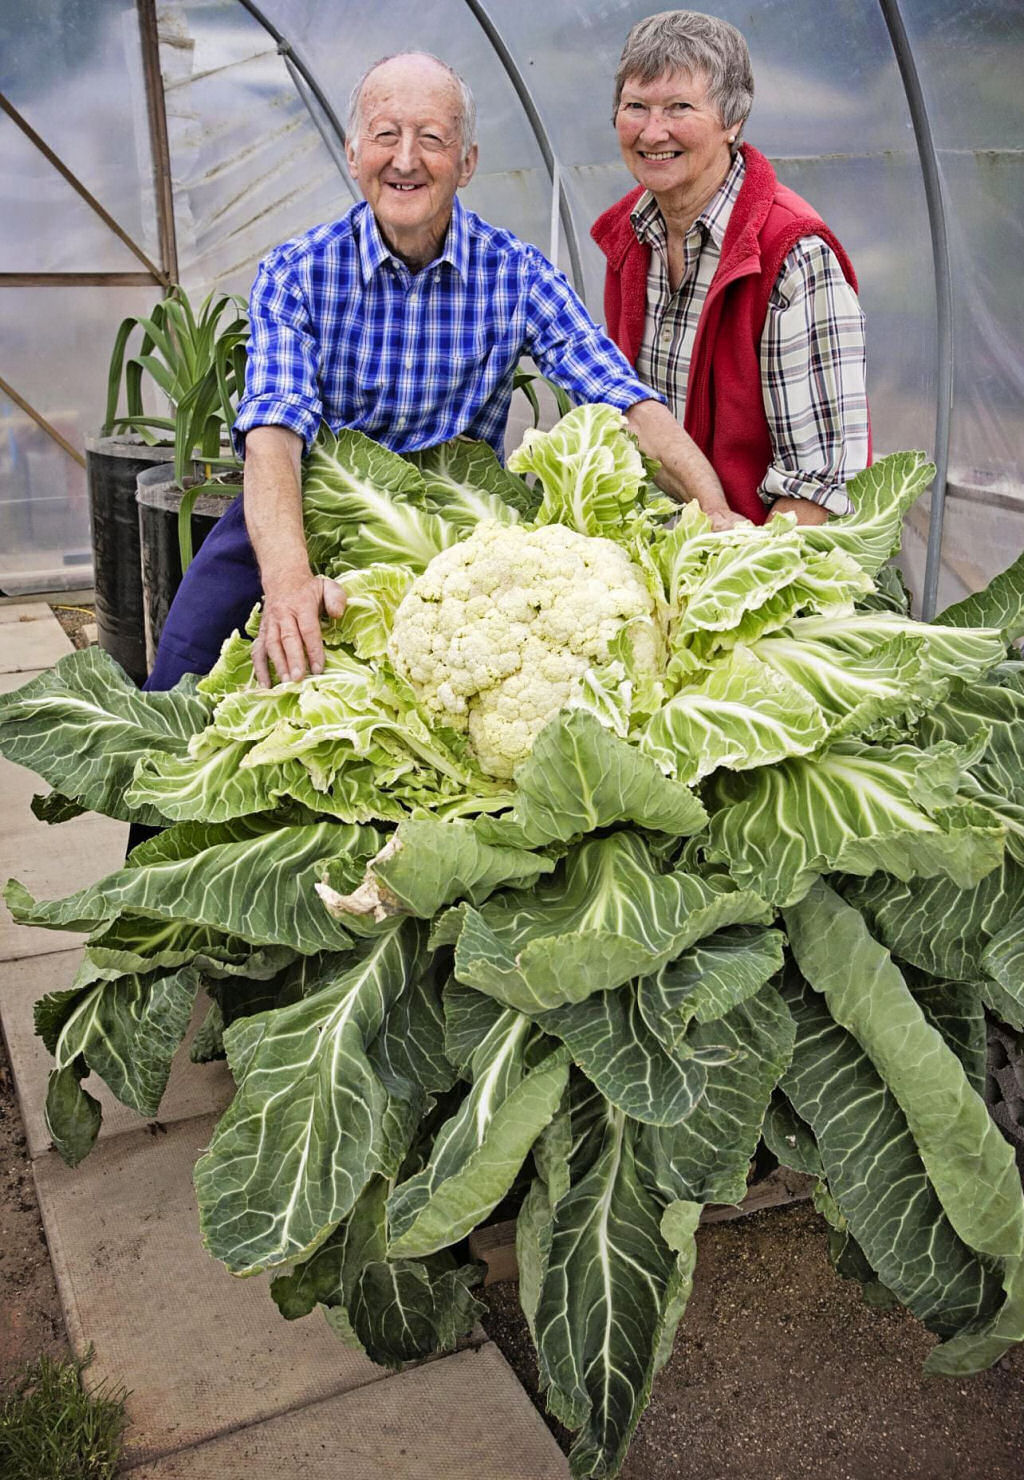 A comunidade solidária de horticultores de vegetais gigantes britânicos